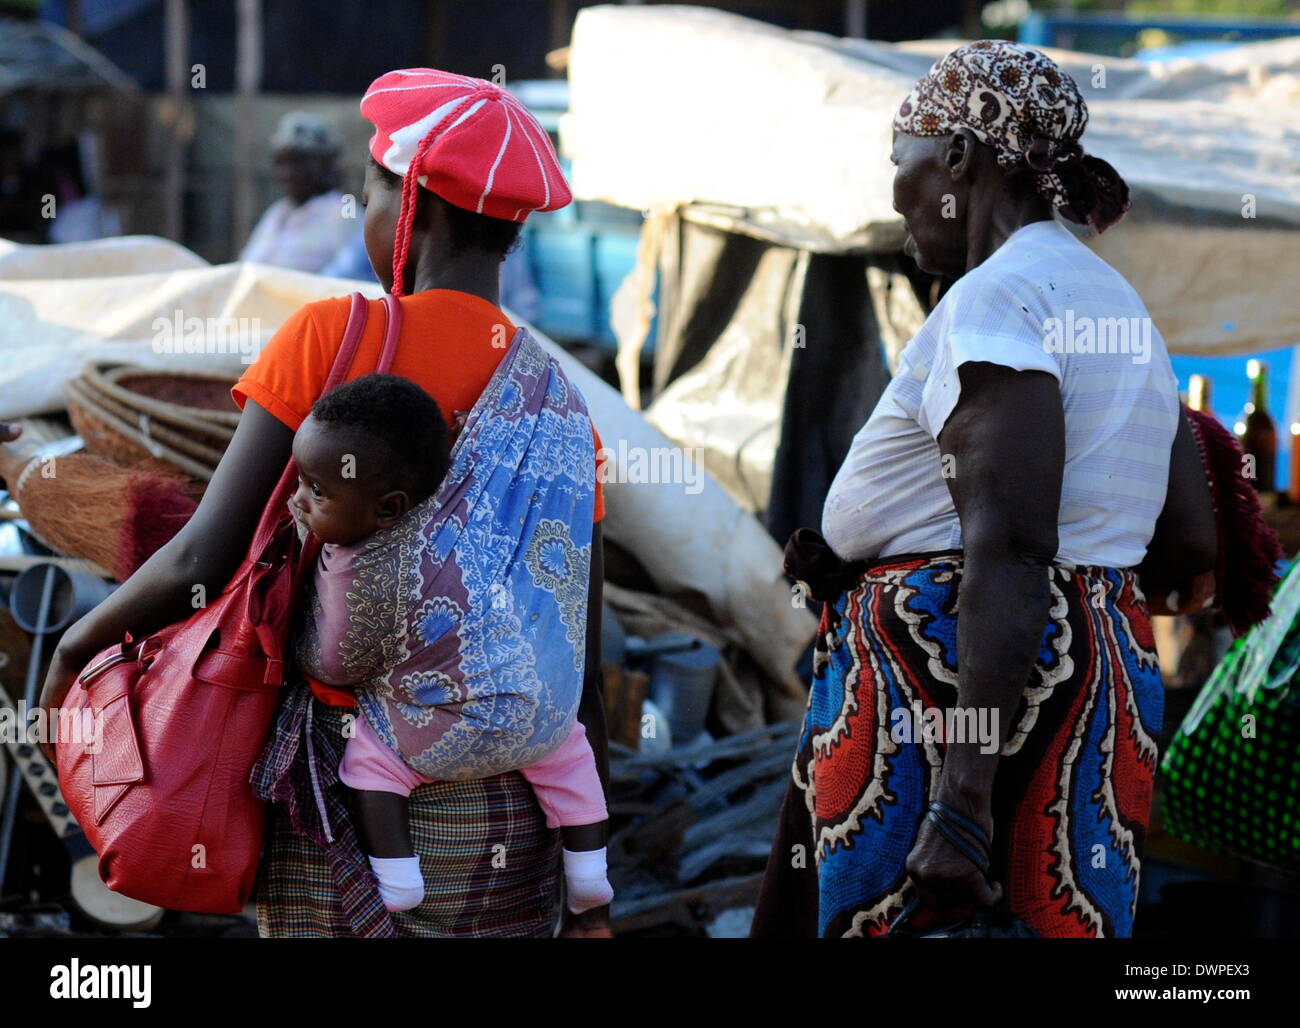 Xai-Xai, Mosambik. 2. März 2013. Eine alltägliche Straßenbild in Xai-Xai, Mosambik, 2. März 2013. Frauen tragen ihre Einkäufe und ein Baby. Foto: Britta Pedersen - kein Draht-SERVICE-/ Dpa/Alamy Live News Stockfoto